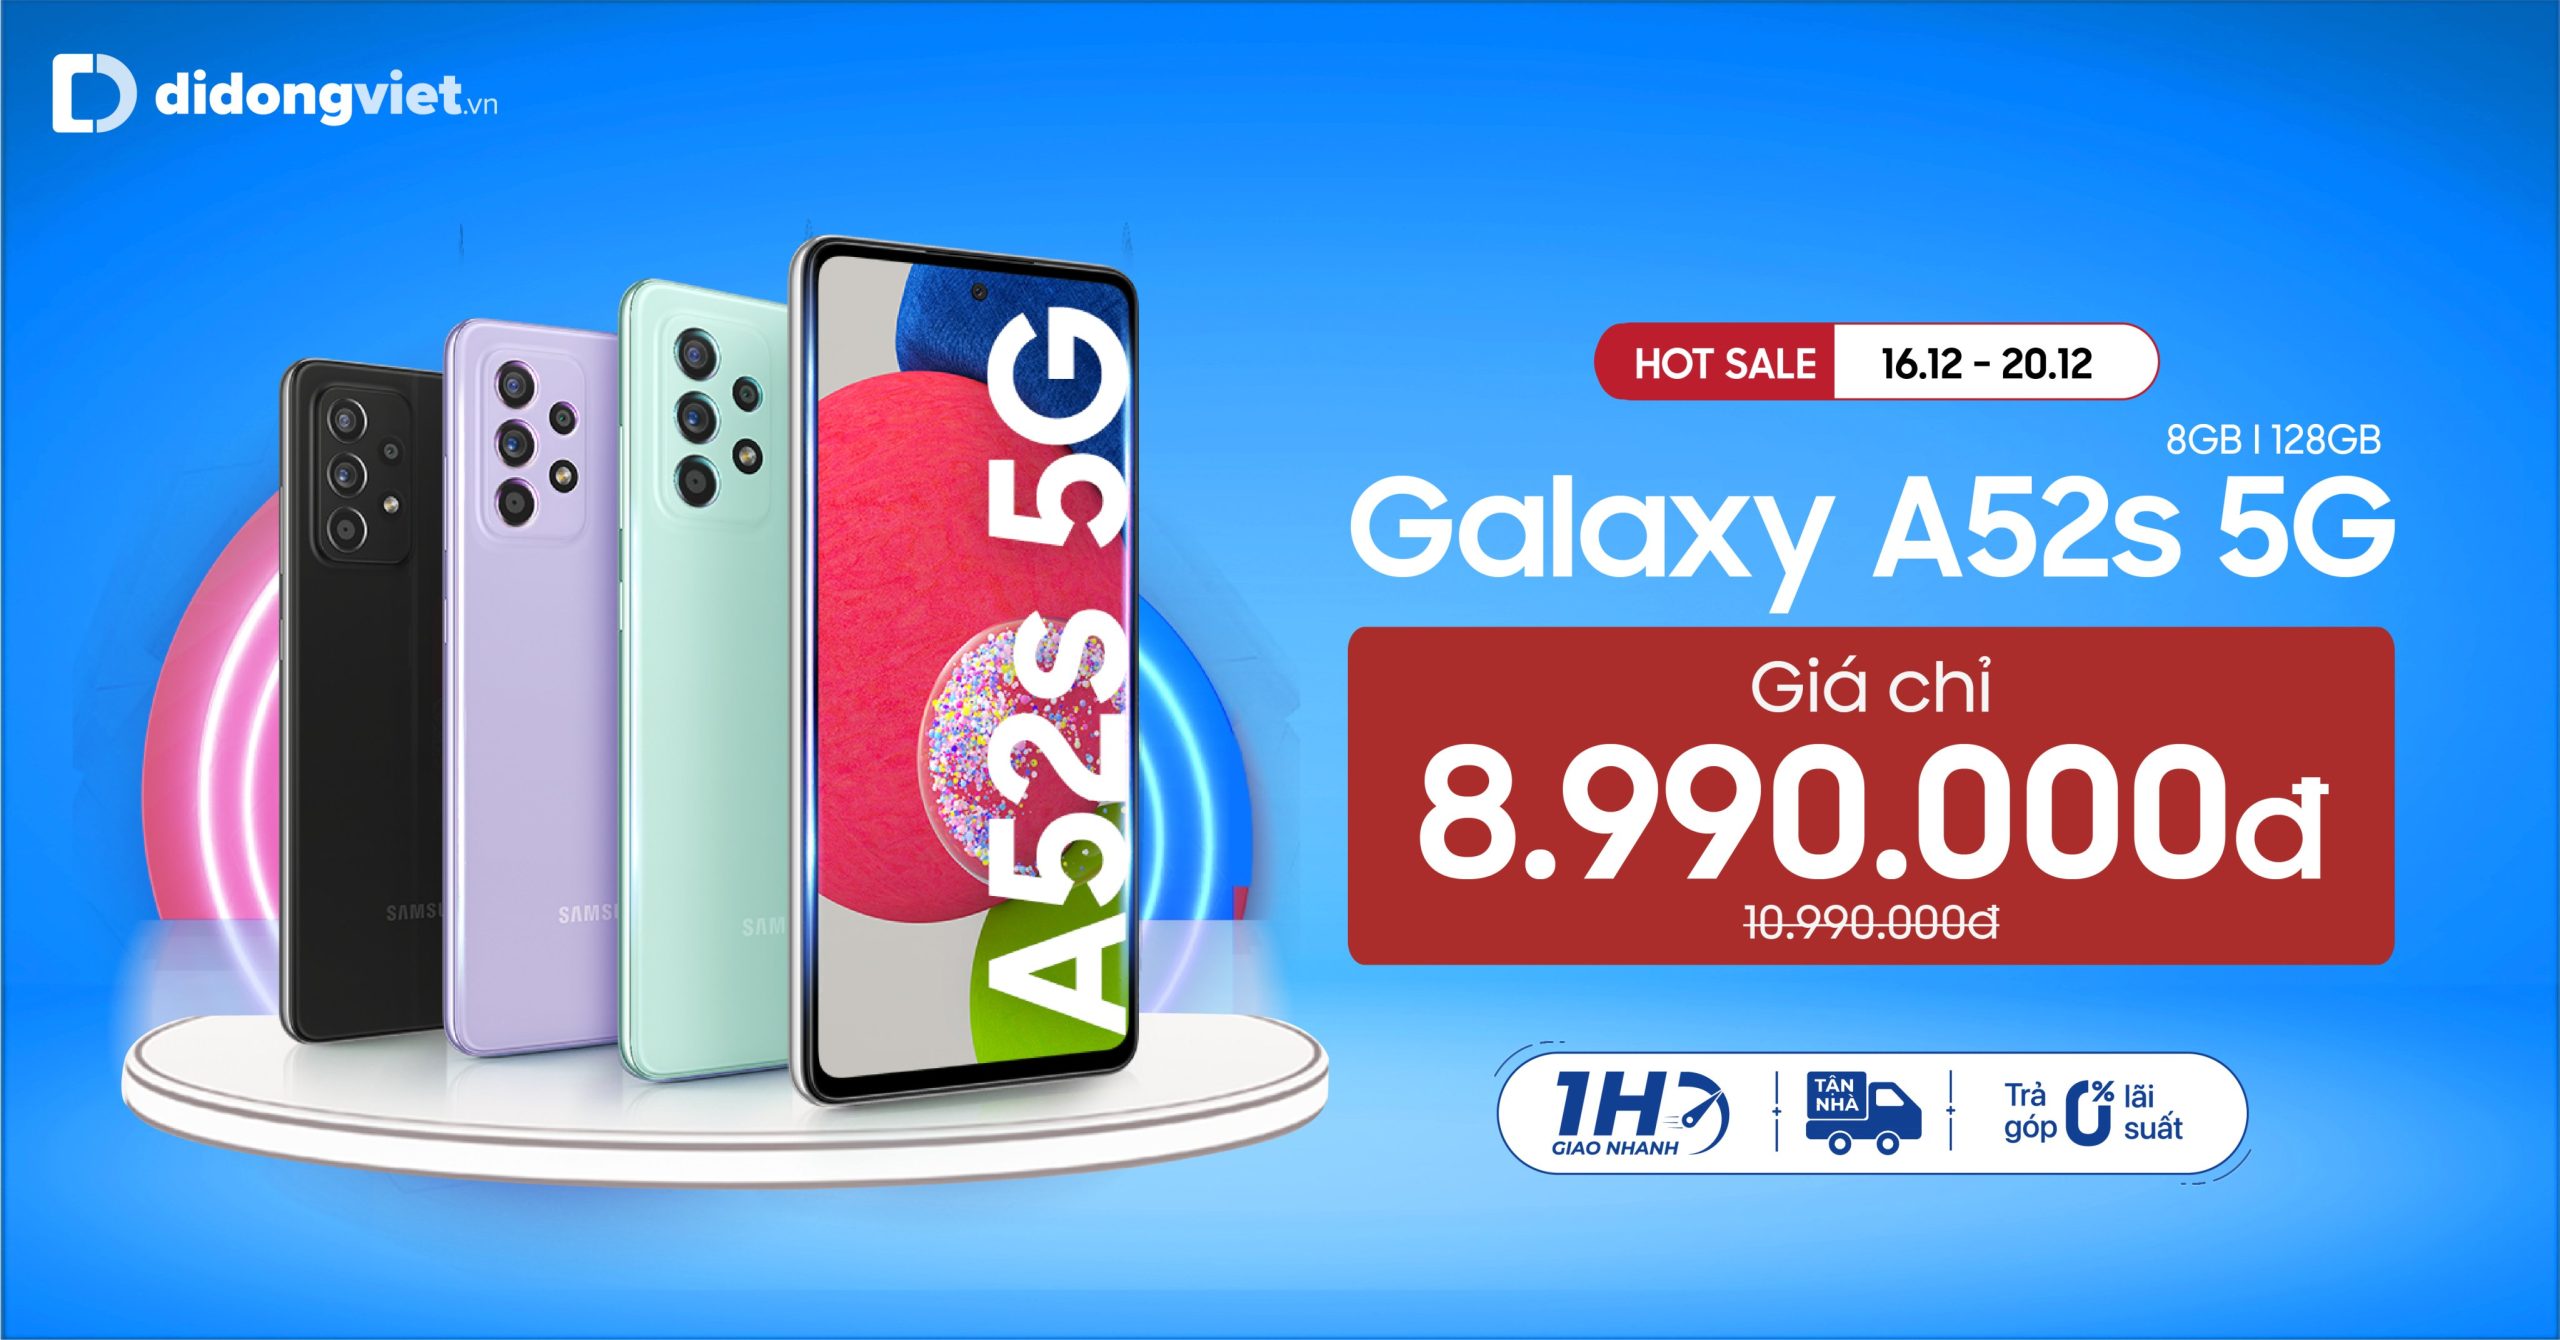 Ưu đãi 16/12 – 20/12 Galaxy A52s 5G giá chỉ còn 8.990.000 đồng. Trả góp 0% lãi suất.